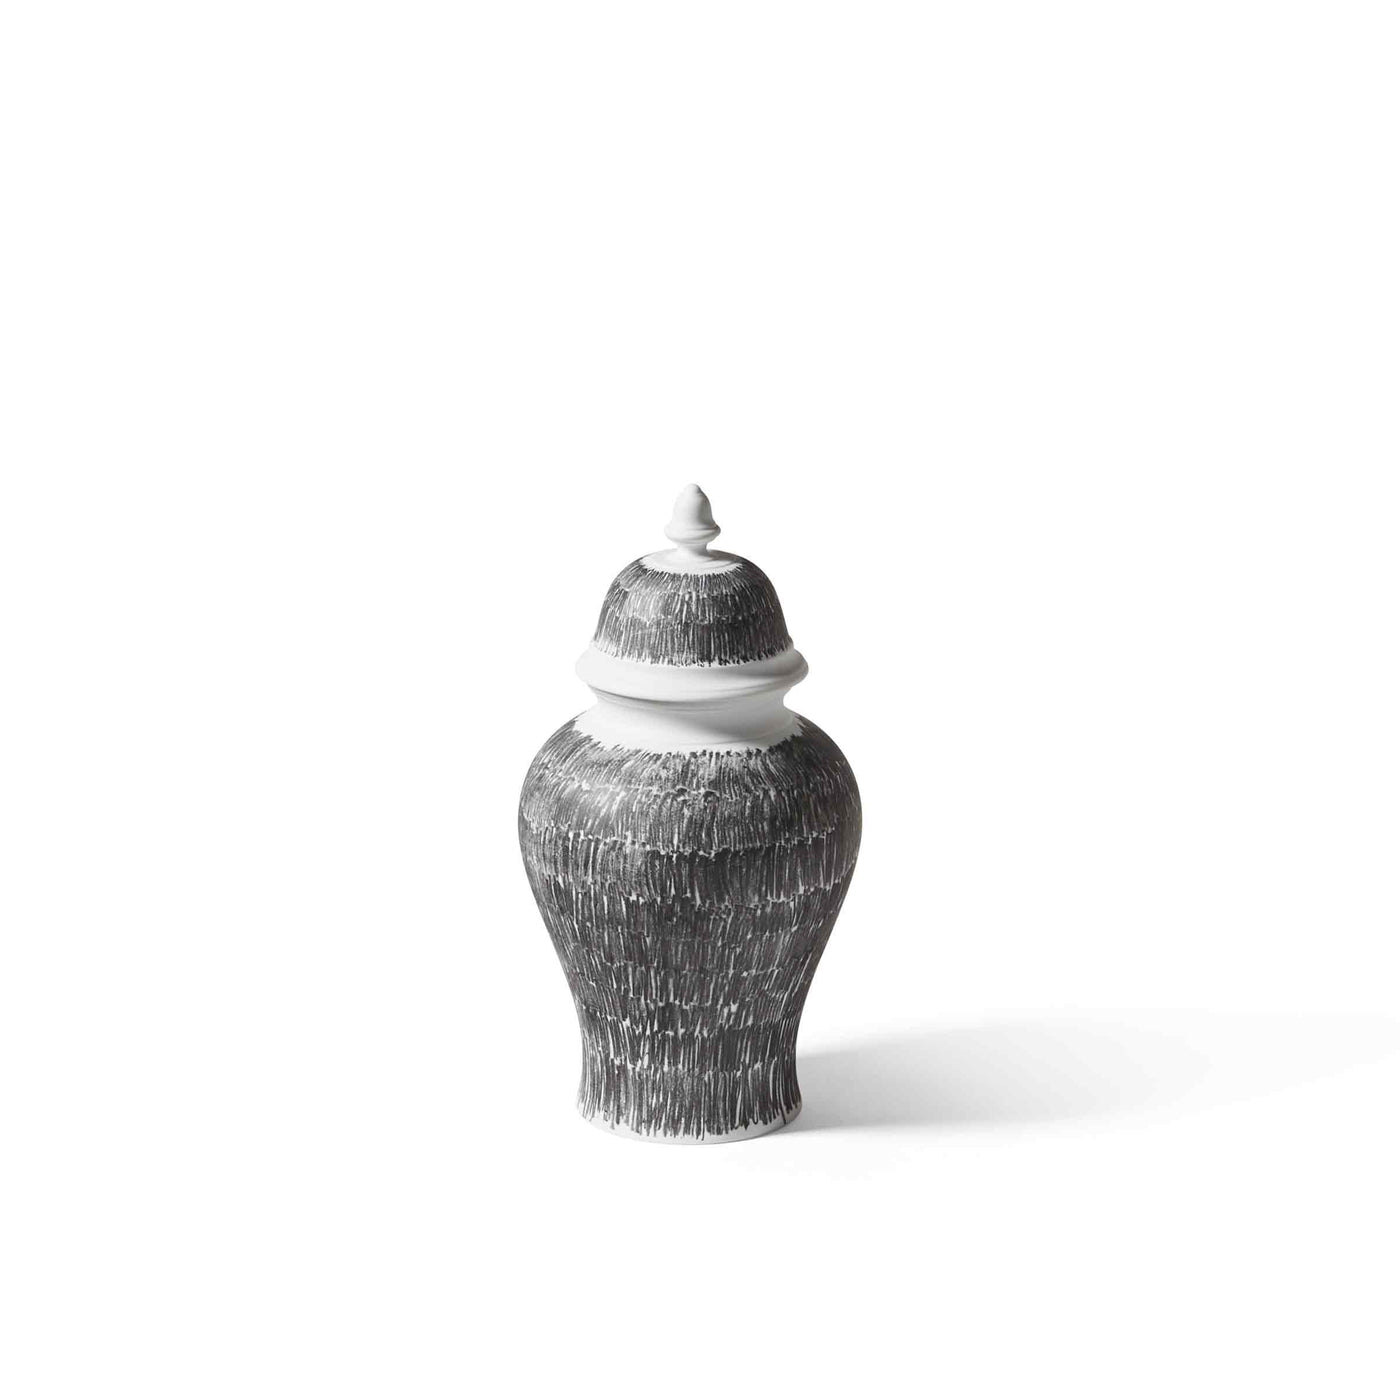 Porcelain Potiche Vase POST SCRIPTUM, designed by Formafantasma for Cassina 01